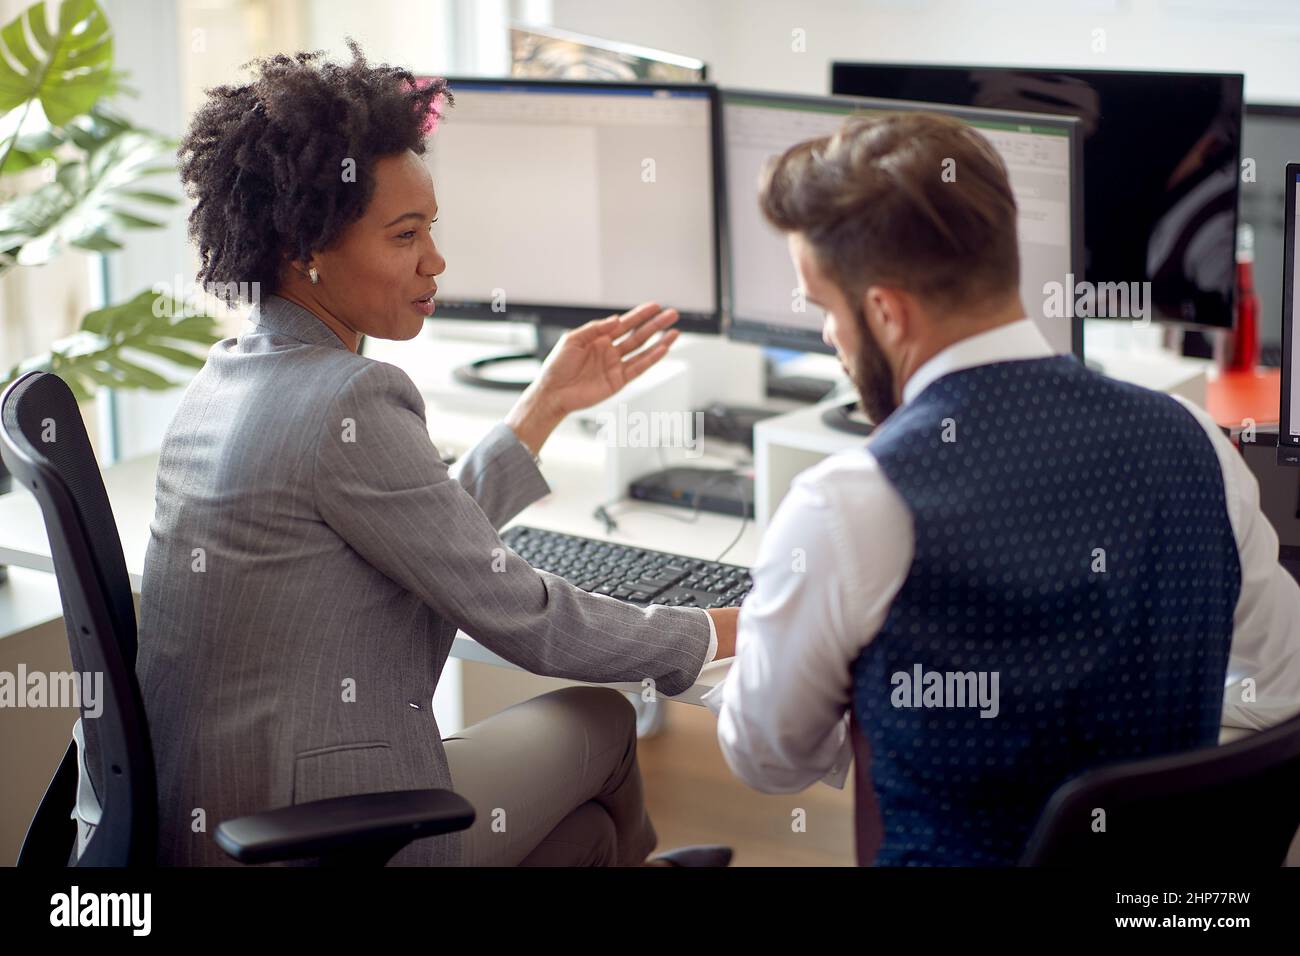 Une jeune employée parle avec son collègue au bureau dans une atmosphère de travail au bureau. Employés, travail, bureau Banque D'Images